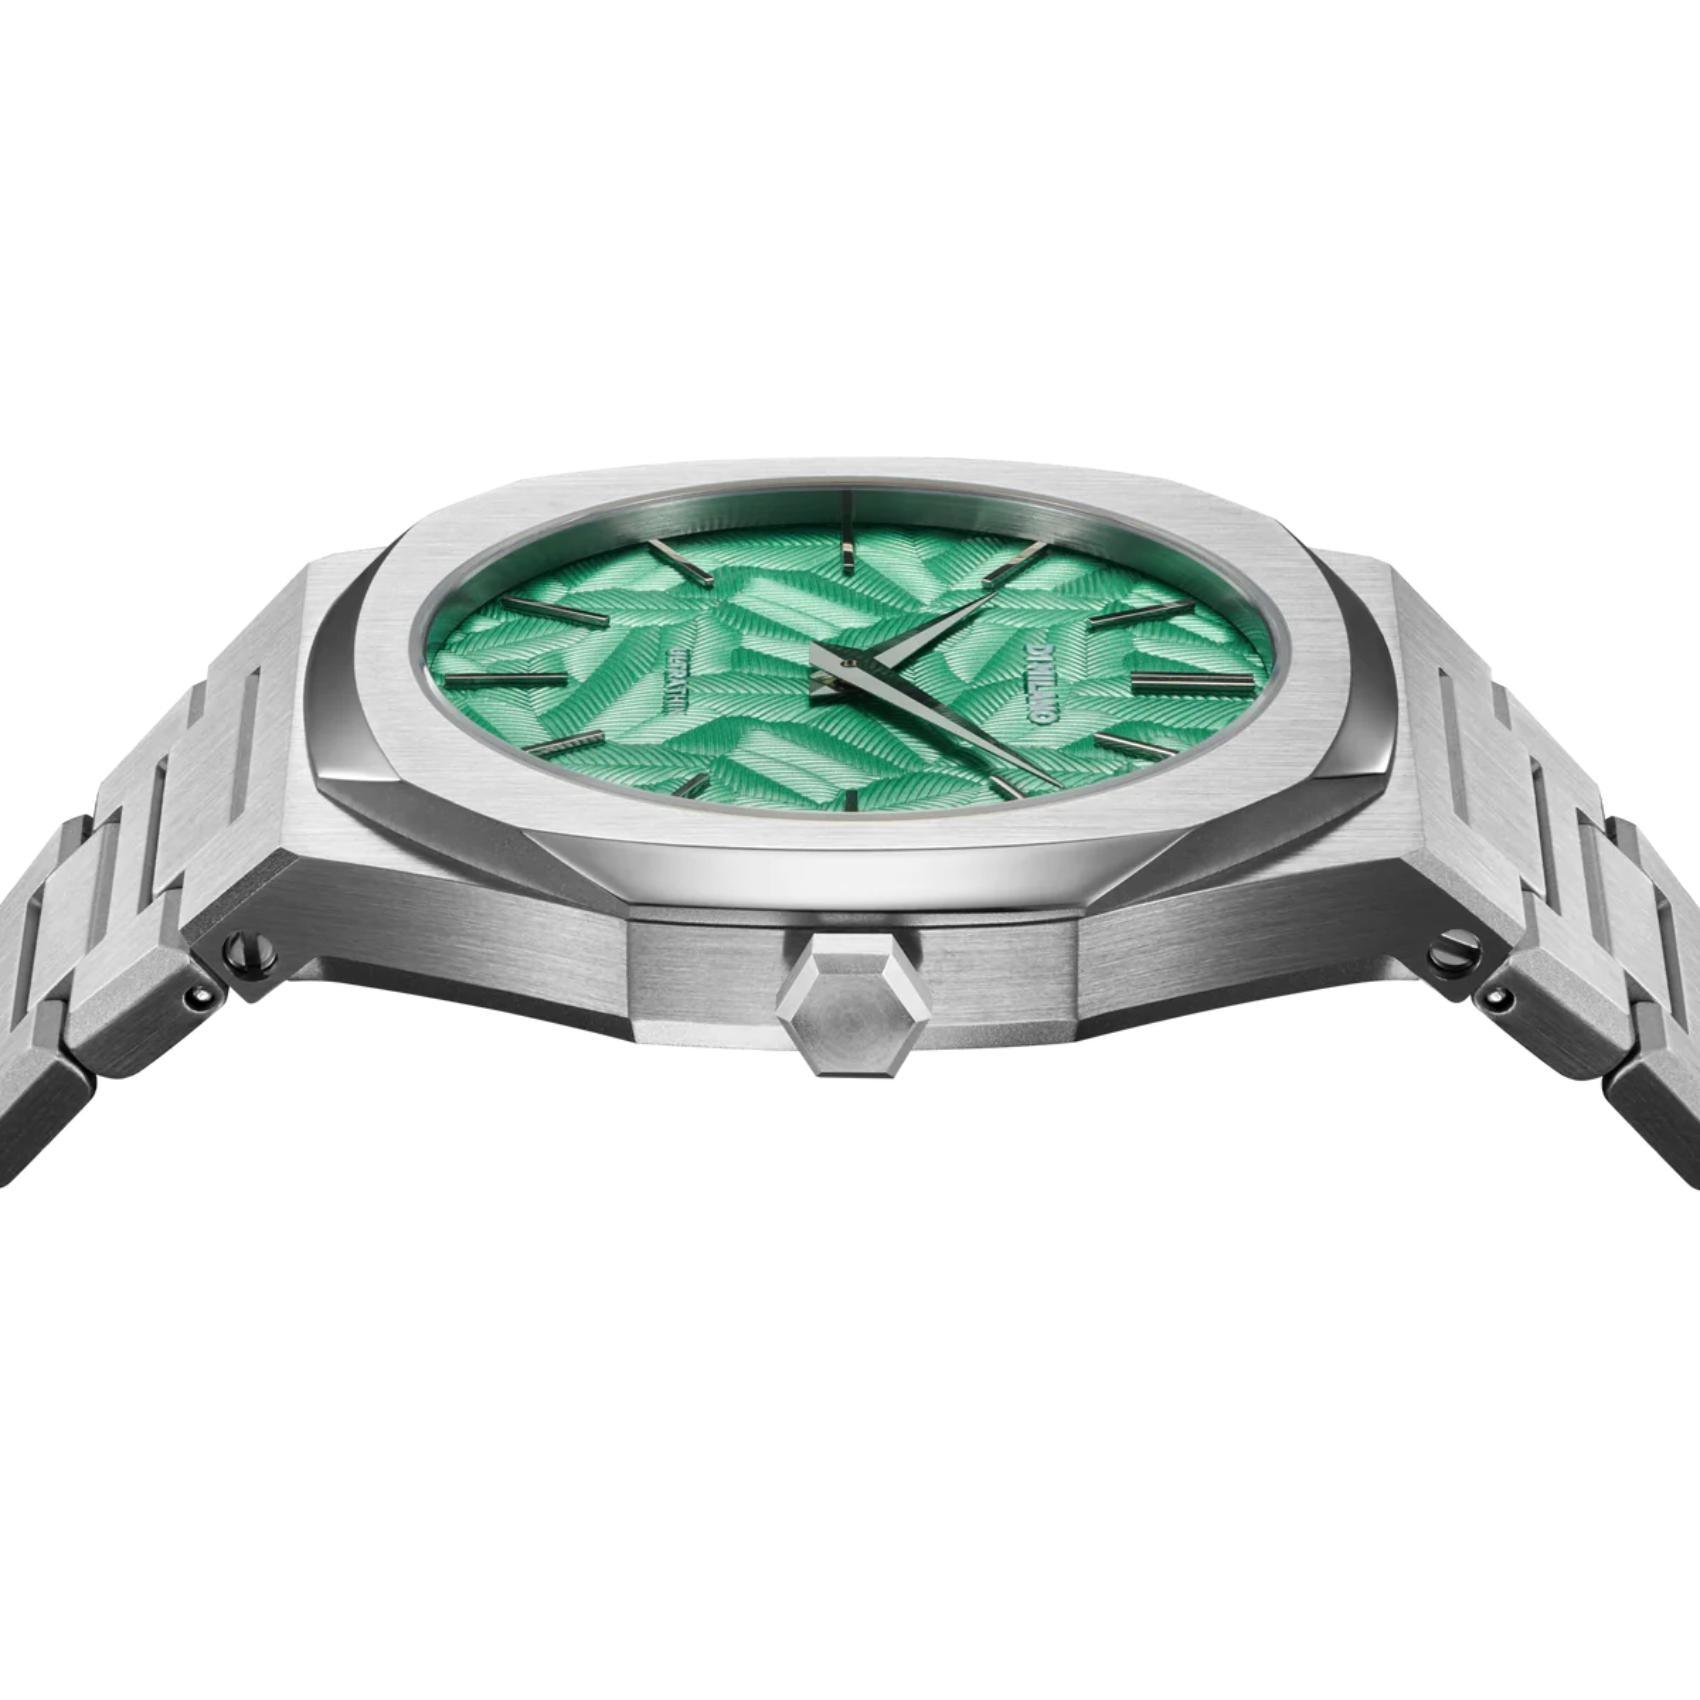 Αντρικό ρολόι D1 Milano Ultra Thin Fir Green D1-UTBJ34 με ασημί ατσάλινο μπρασελέ και πράσινο καντράν 40mm με οκτάγωνο σχήμα.